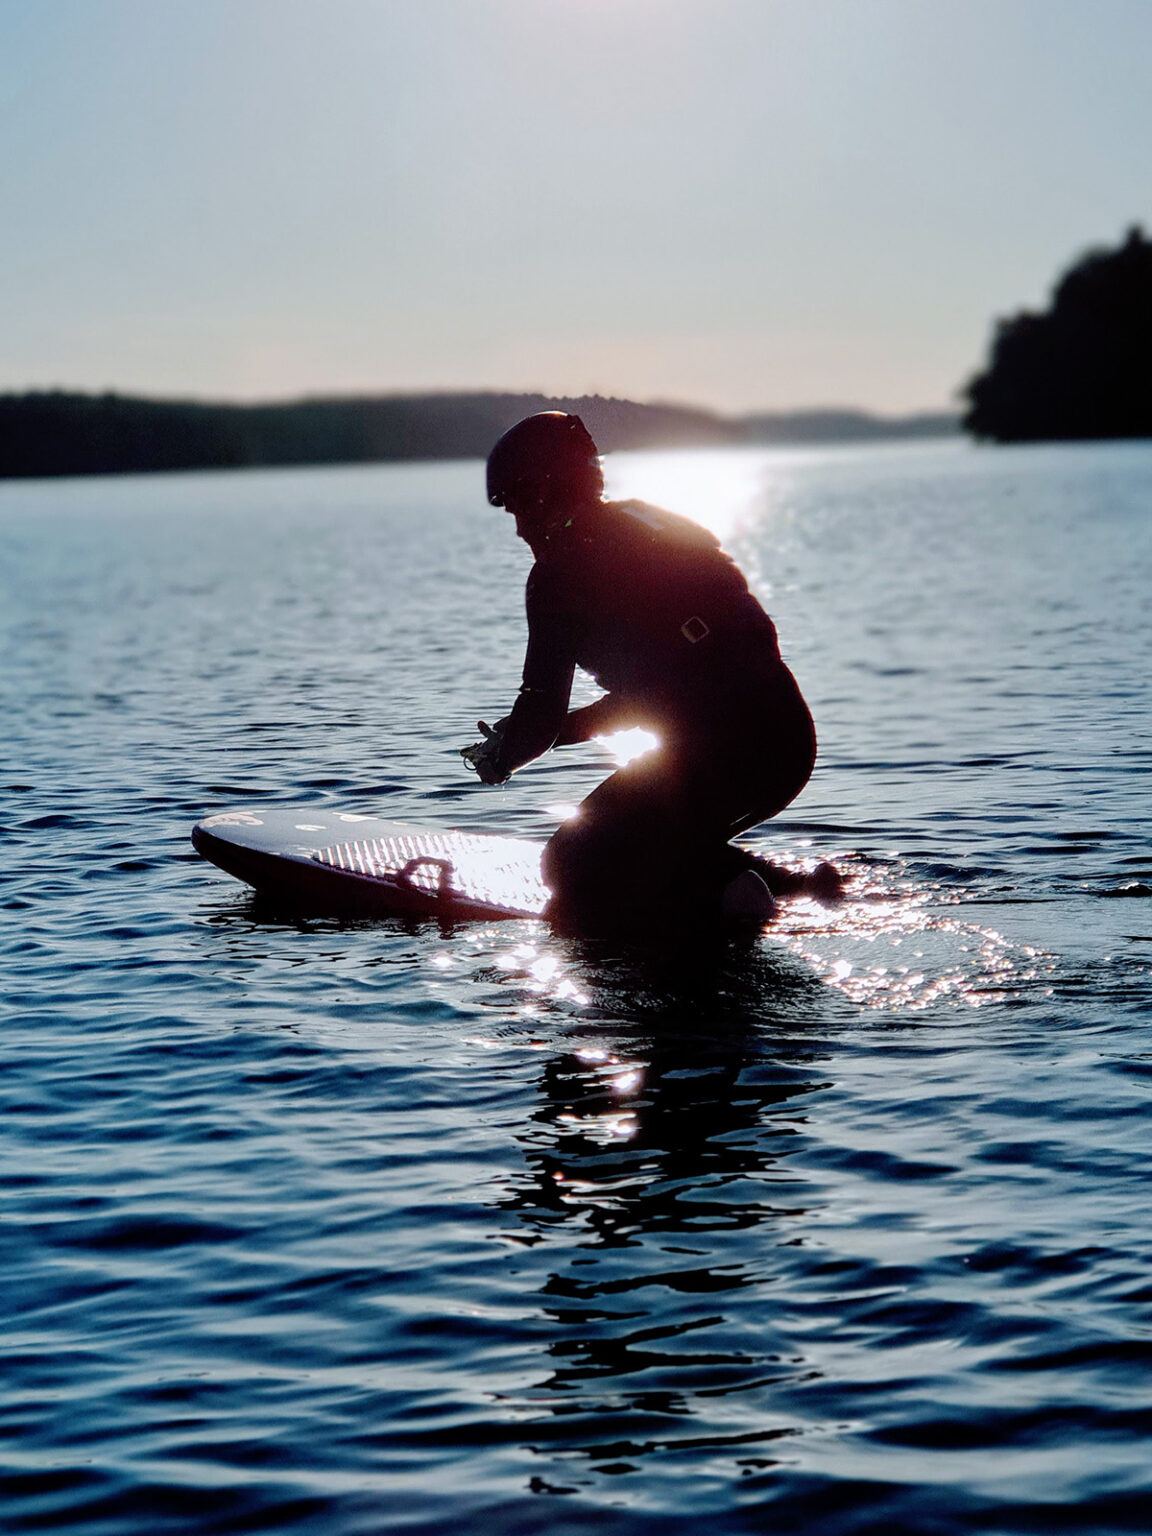 En surfare i sitter på sin bräda i vattnet, iklädd flytväst och hjälm.